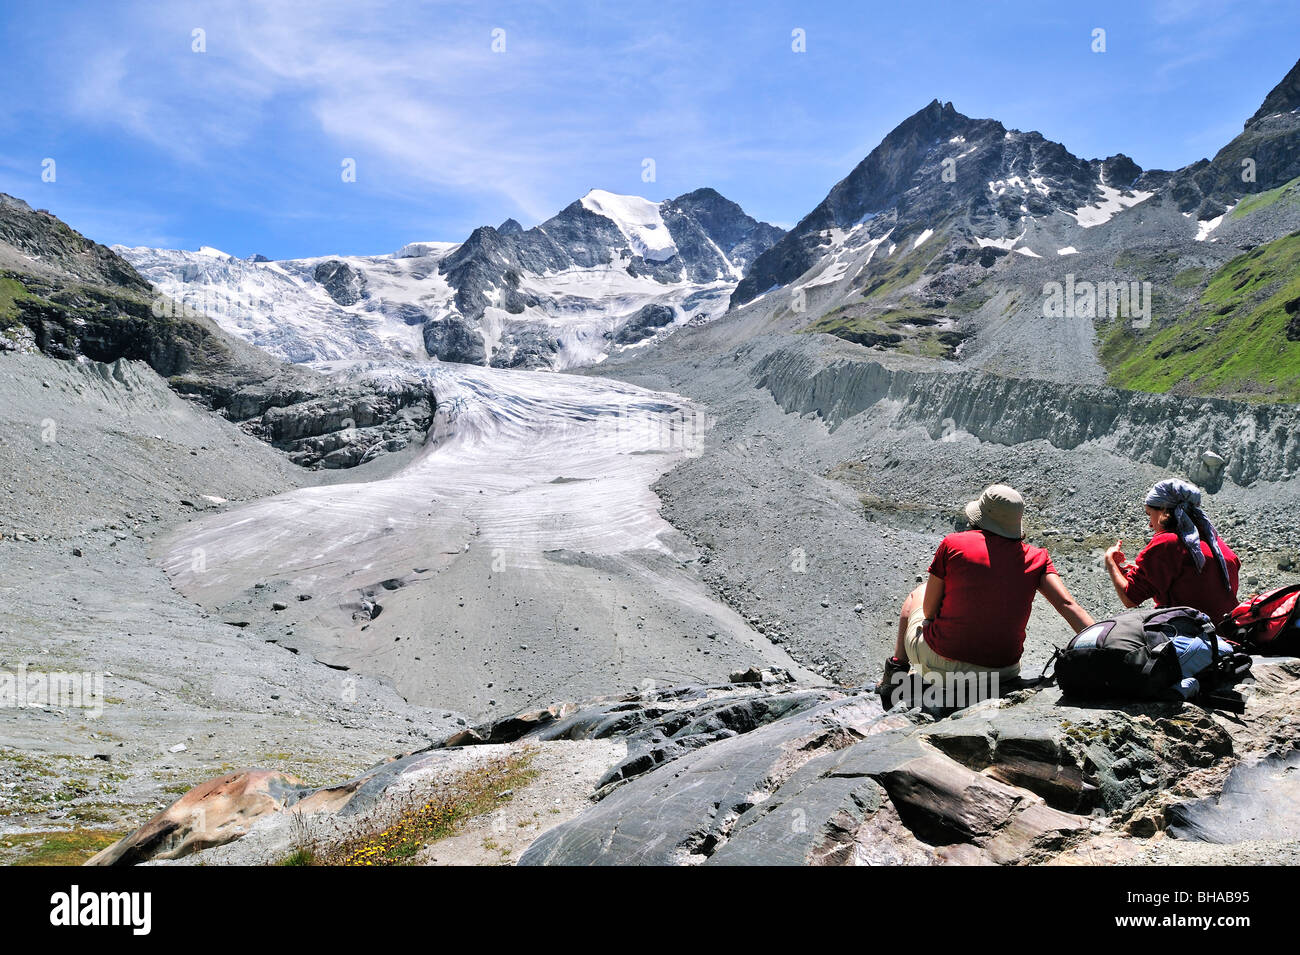 Les marcheurs / les randonneurs se reposant avec vue sur le glacier de Moiry en retraite, Alpes Pennines / Walliser Alpen, Valais / Wallis (Suisse) Banque D'Images